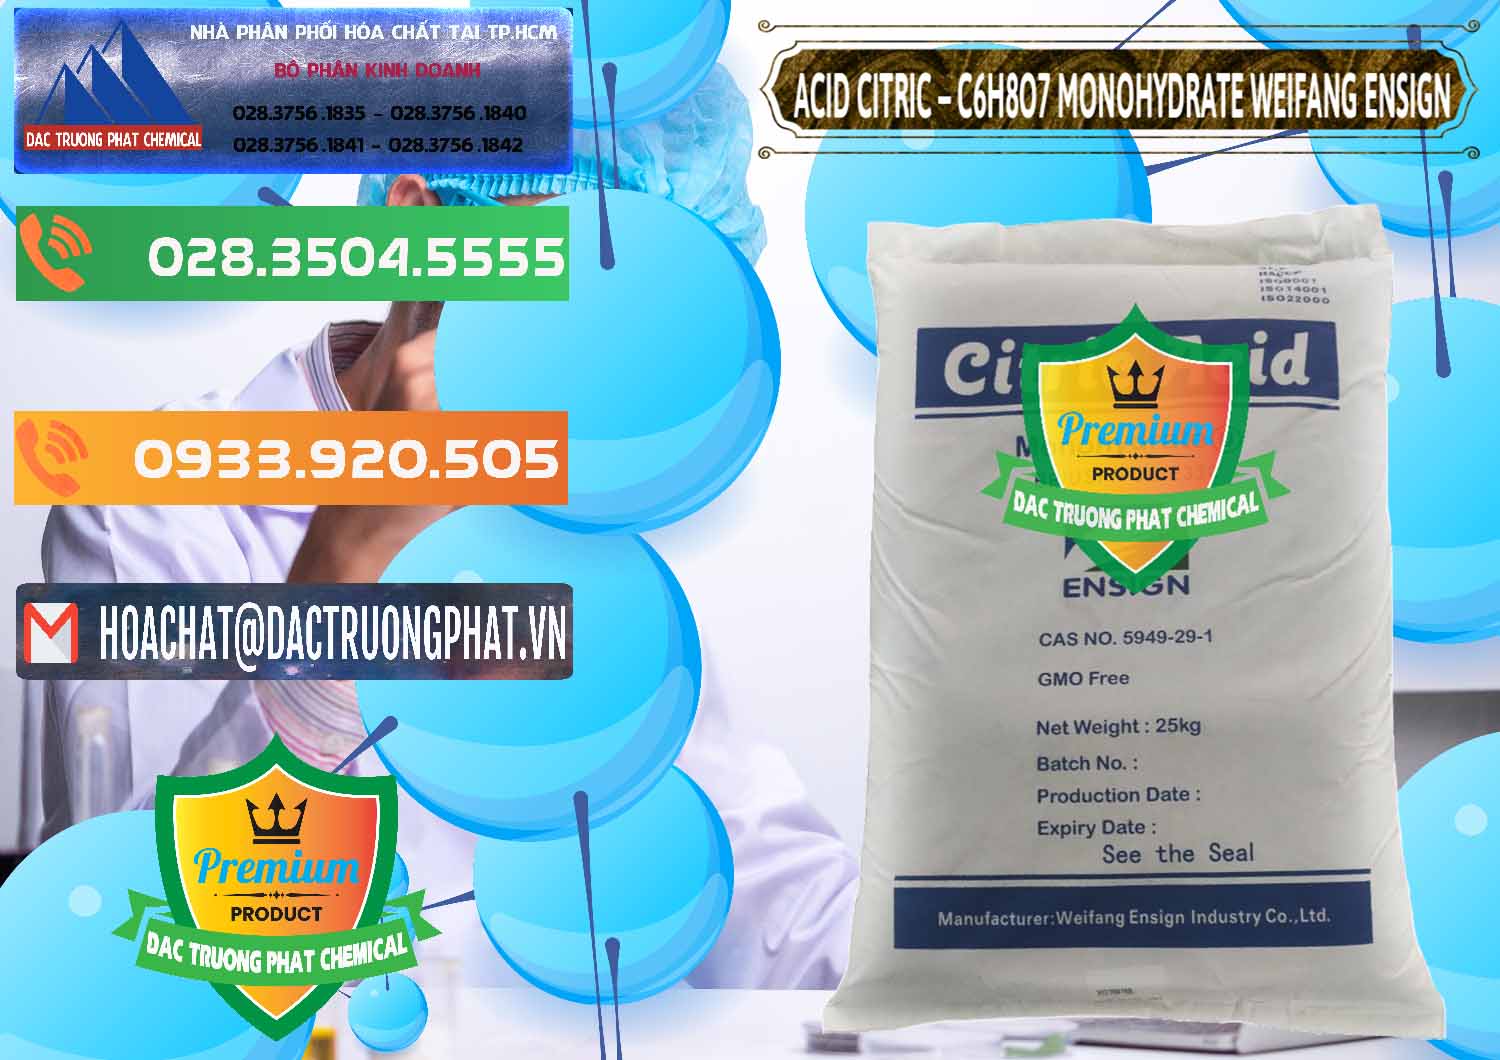 Cty chuyên cung ứng và bán Acid Citric - Axit Citric Monohydrate Weifang Trung Quốc China - 0009 - Cty chuyên kinh doanh & phân phối hóa chất tại TP.HCM - hoachatxulynuoc.com.vn